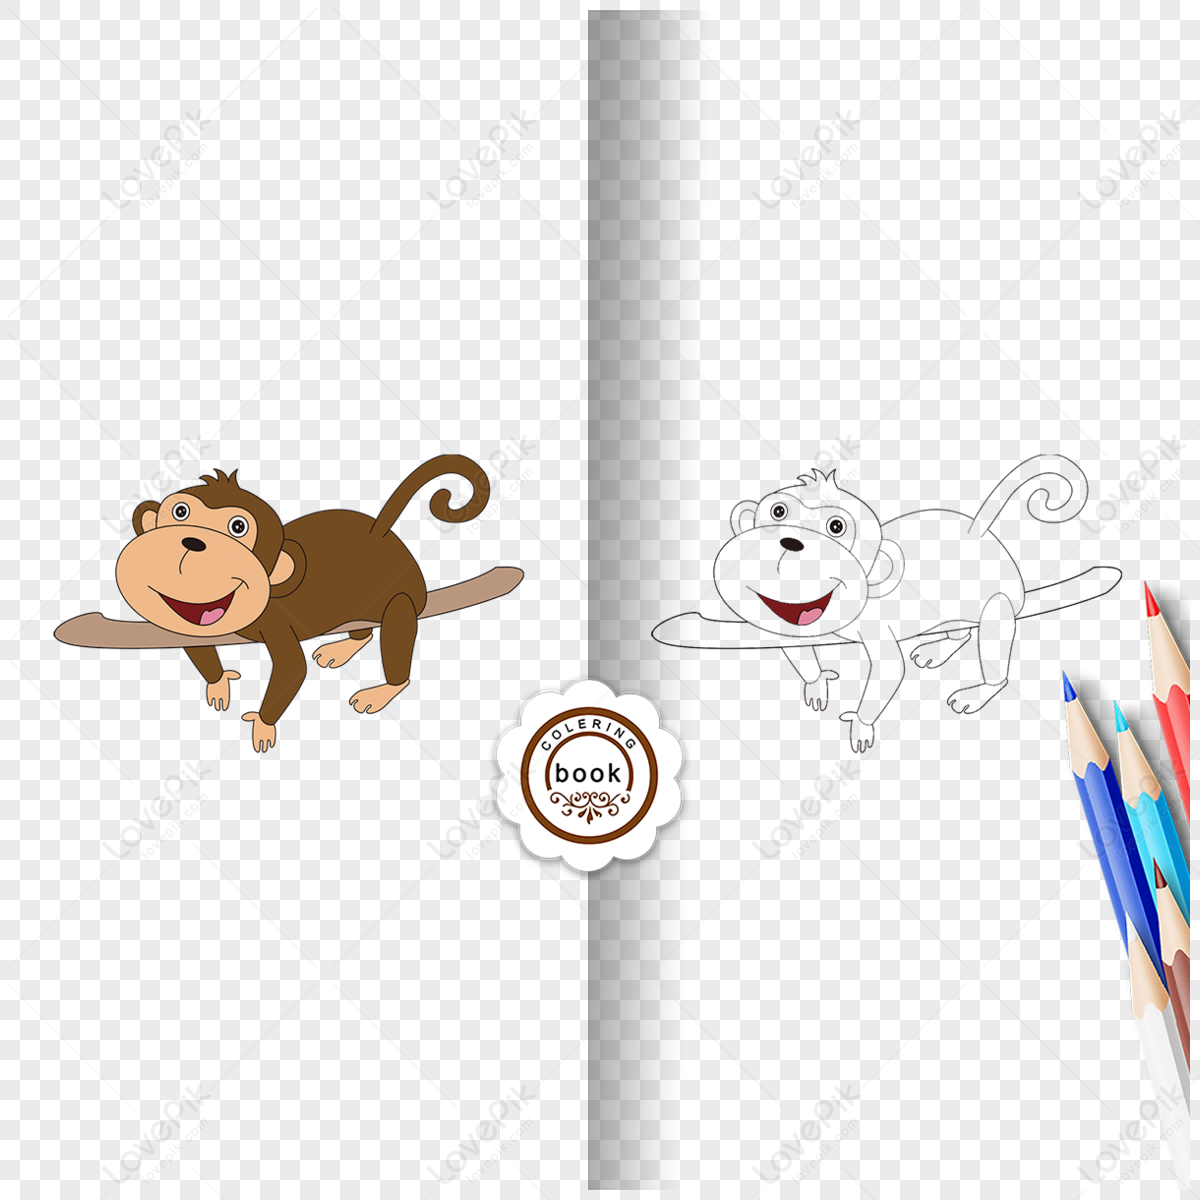 Macaco Clipart Preto E Branco Cartão De Coloração Desenho Lineart Preto E  Branco Bonito Do Macaco